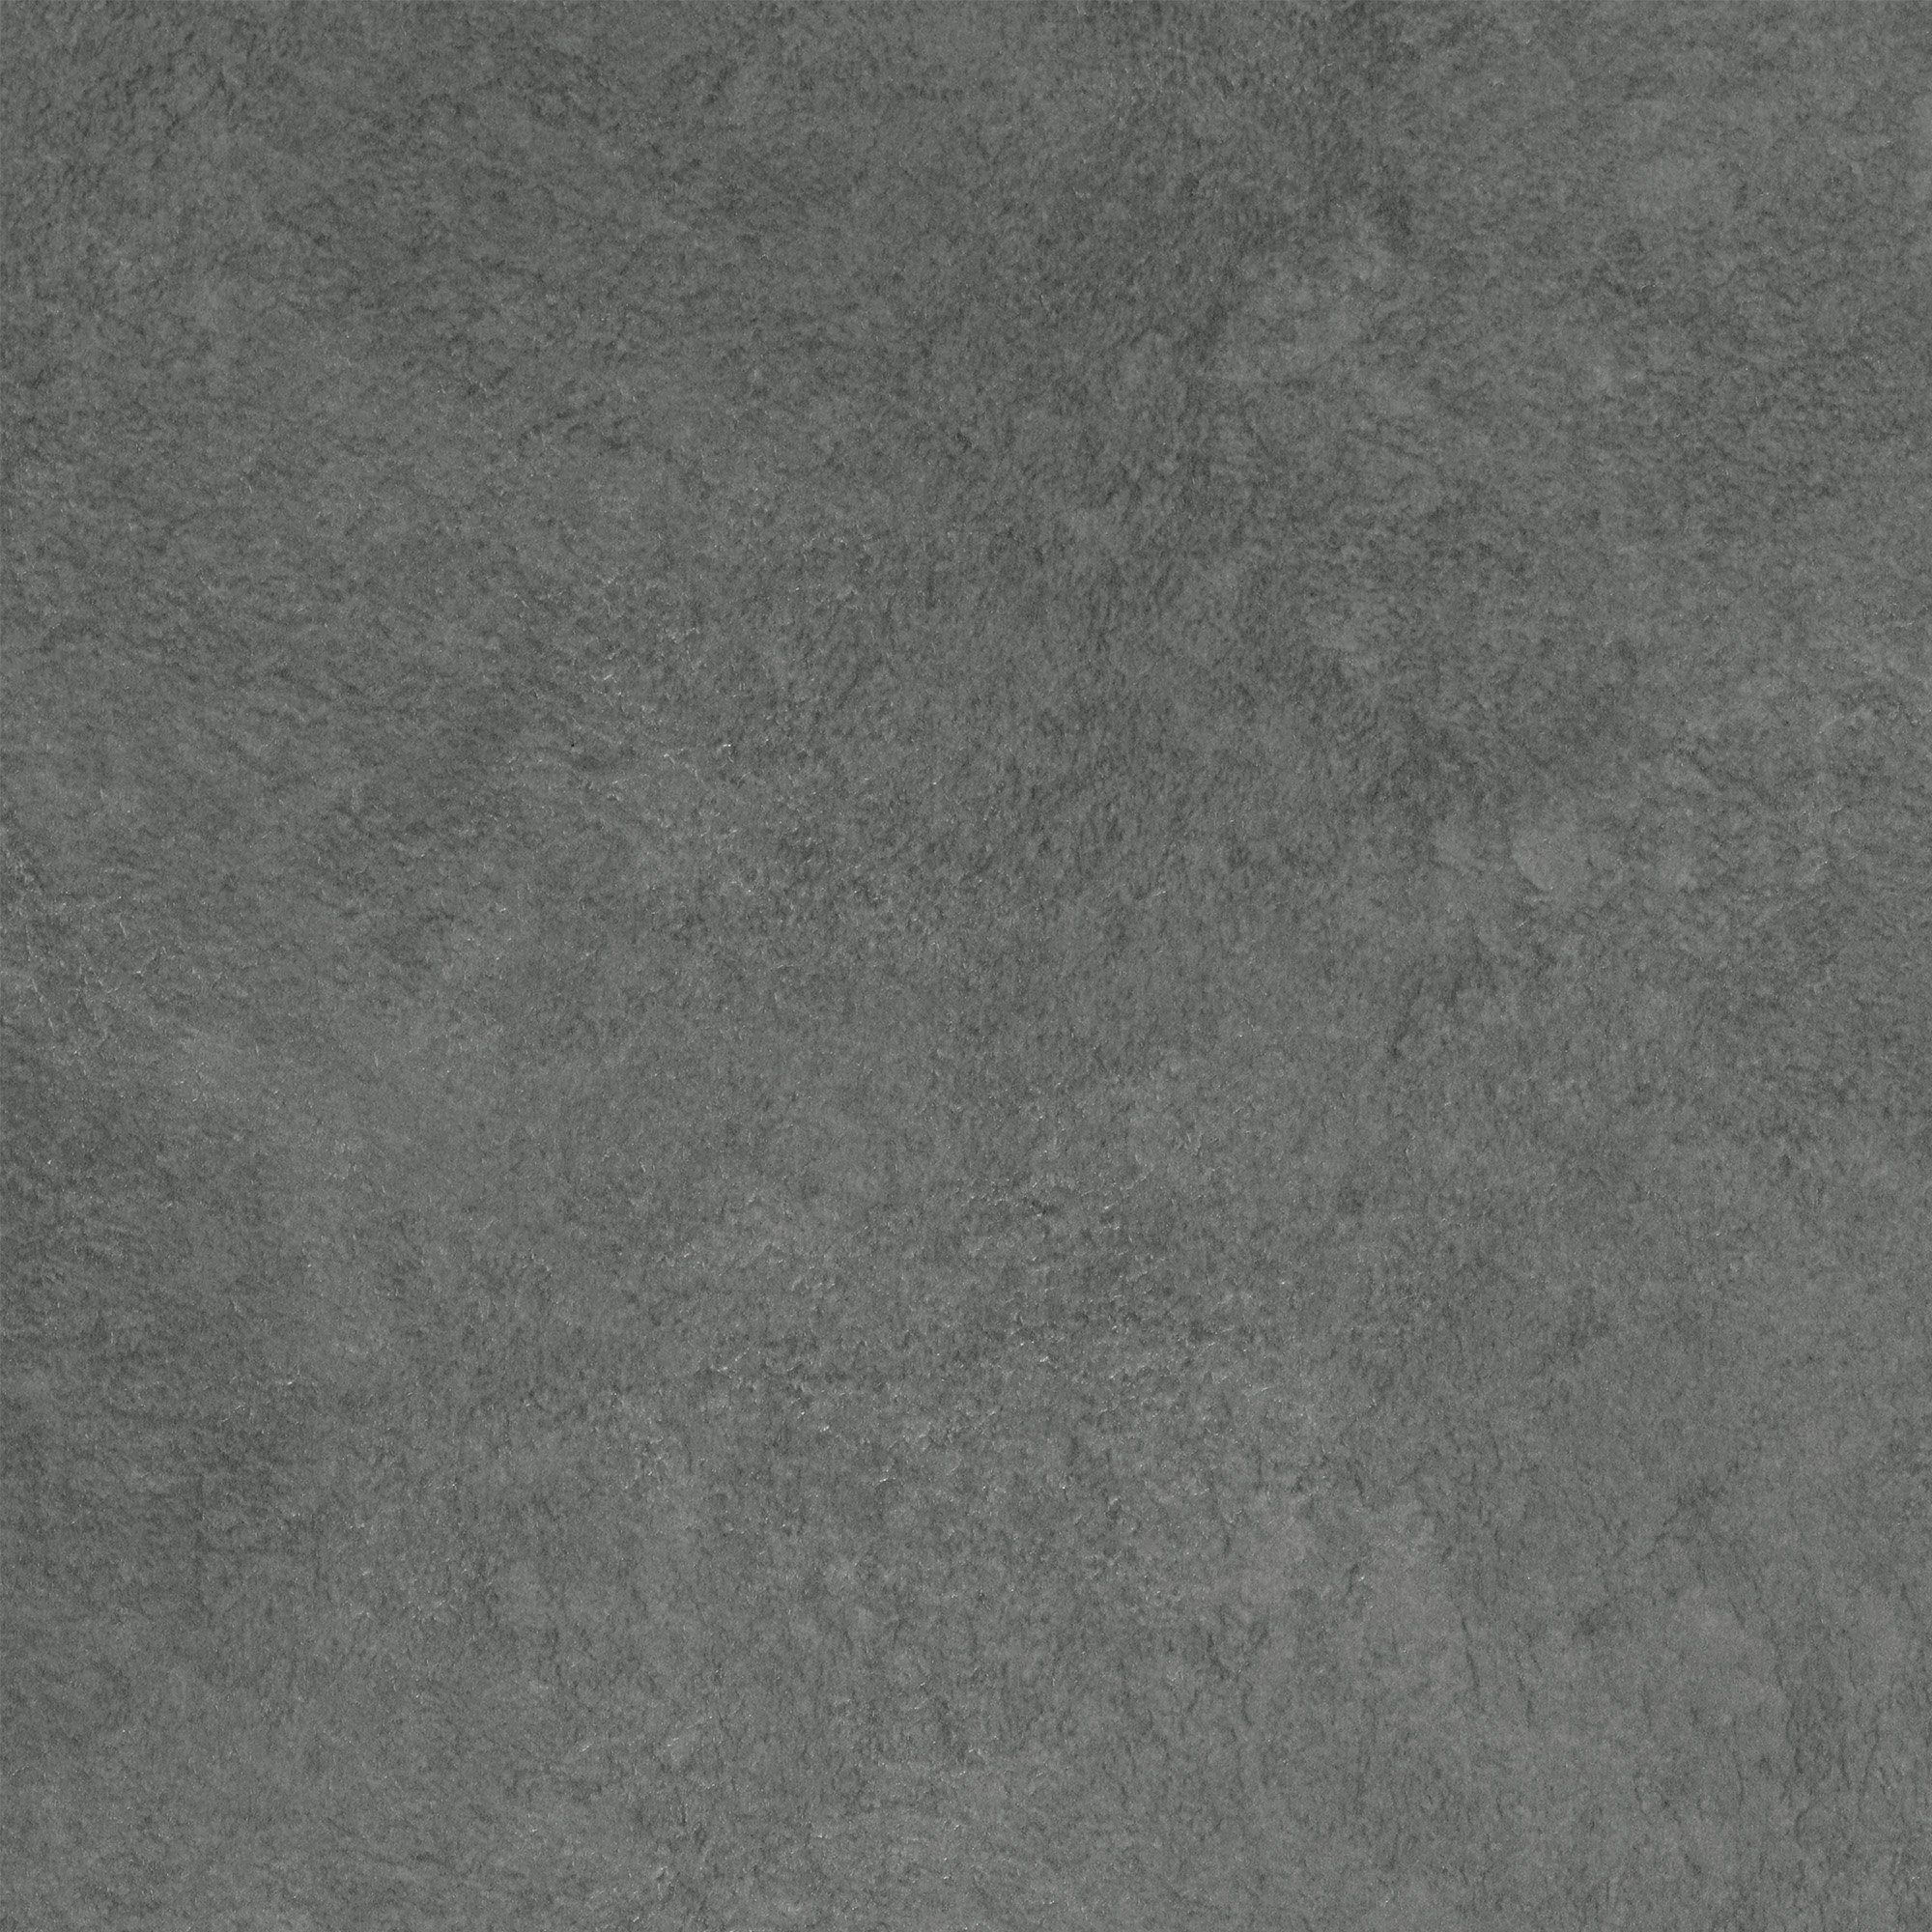 BRICOFLOR Vinylboden Tarkett Iconik 300, PVC Bodenbelag Meterware anthrazit Betonoptik mit Schaumrücken, Meterware in 200 und 400 cm Breite